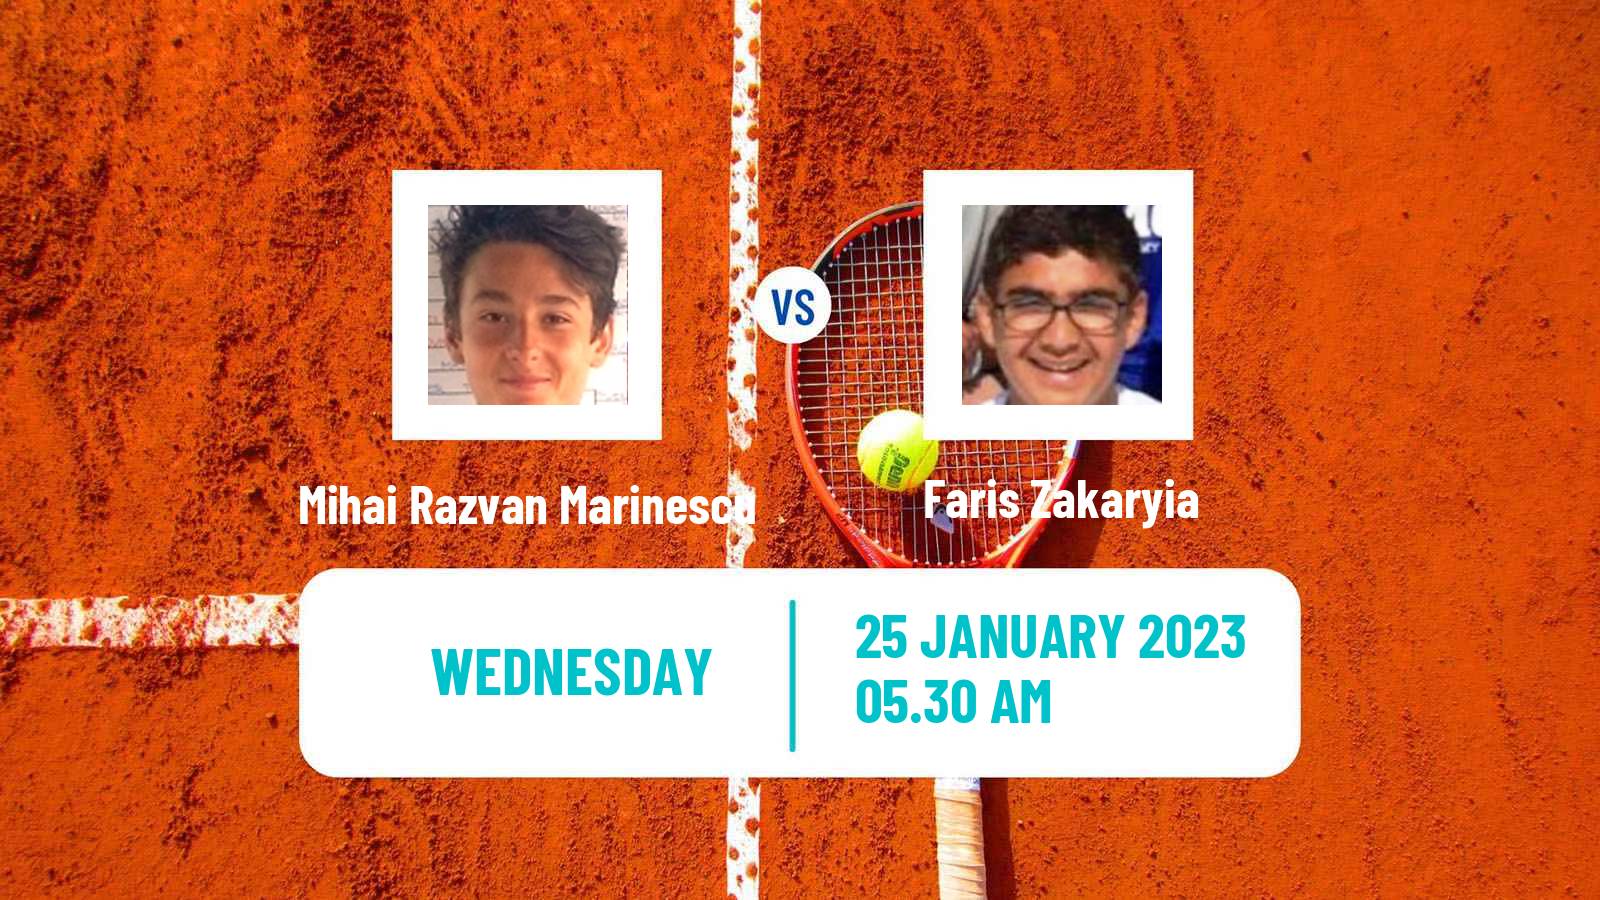 Tennis ITF Tournaments Mihai Razvan Marinescu - Faris Zakaryia